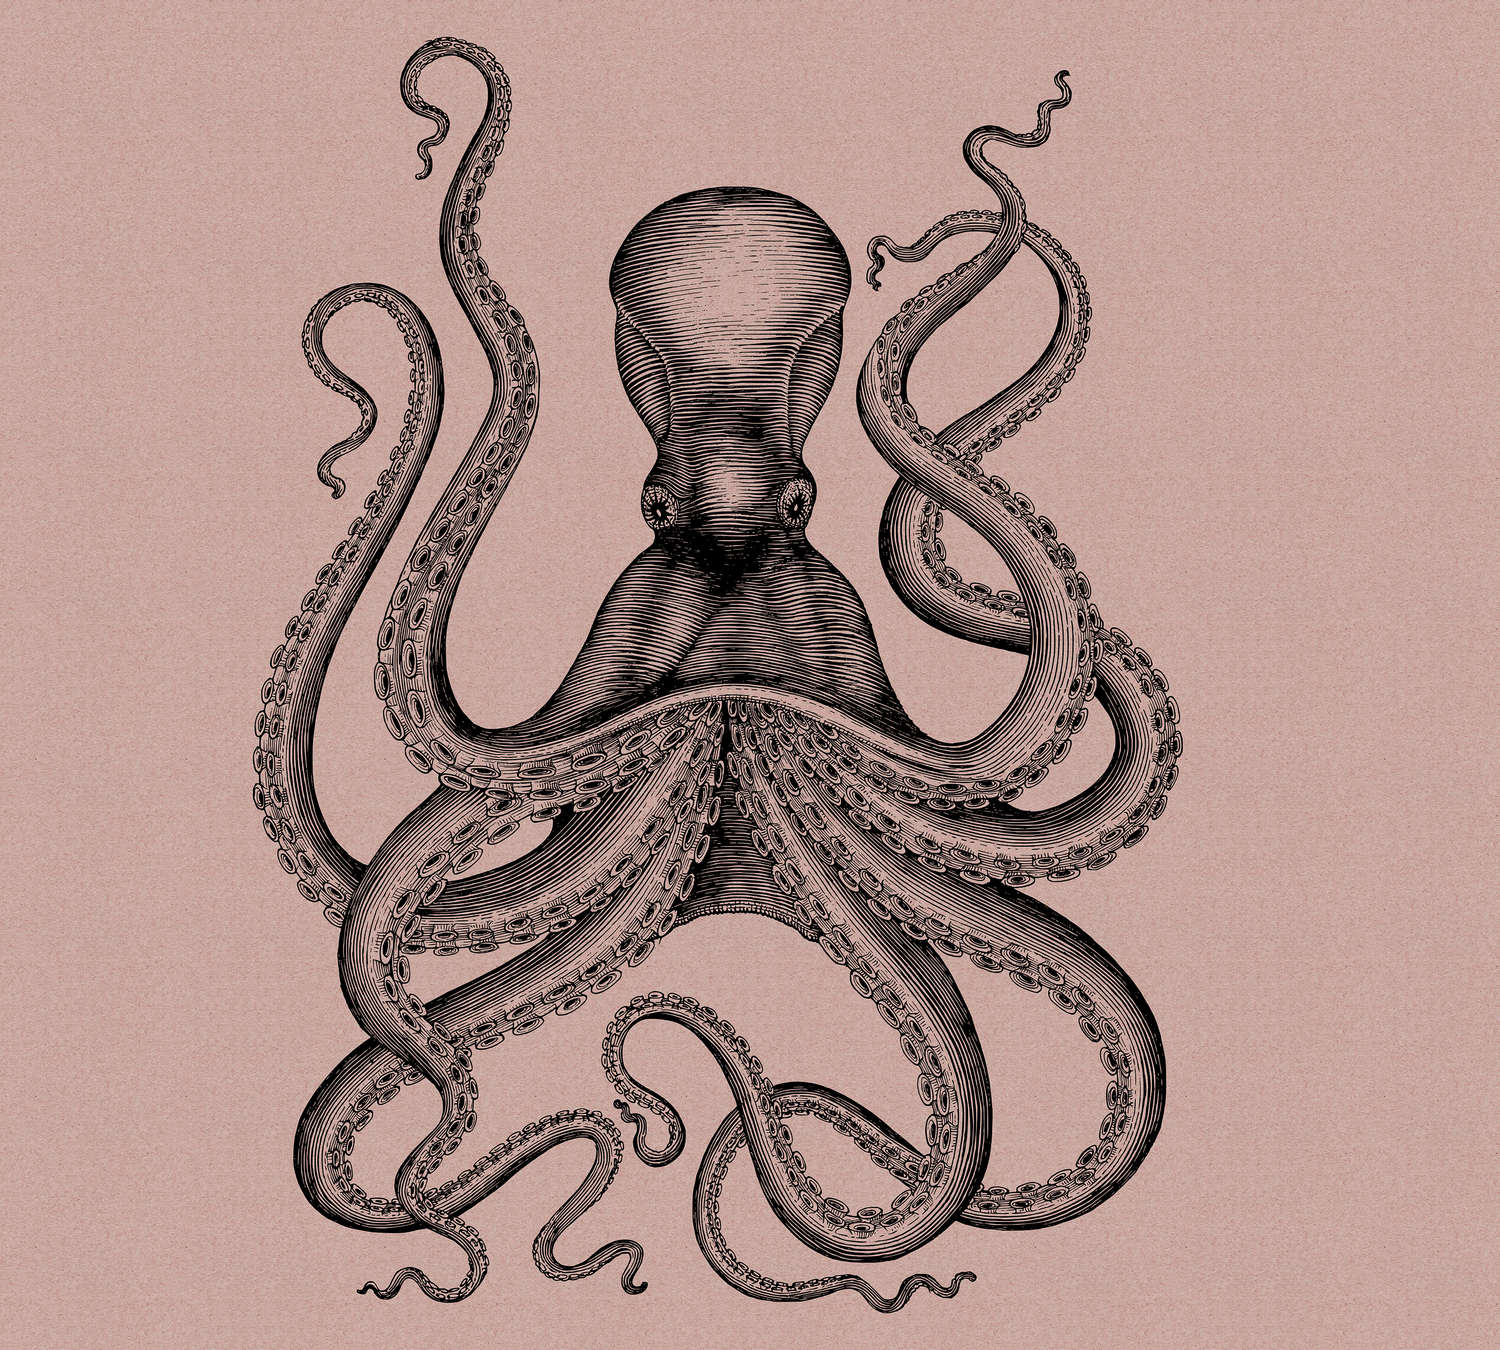             Jules 1 - Digital behang met octopus in tekening & retro stijl in kartonnen structuur - roze, zwart | parelmoer glad vlies
        